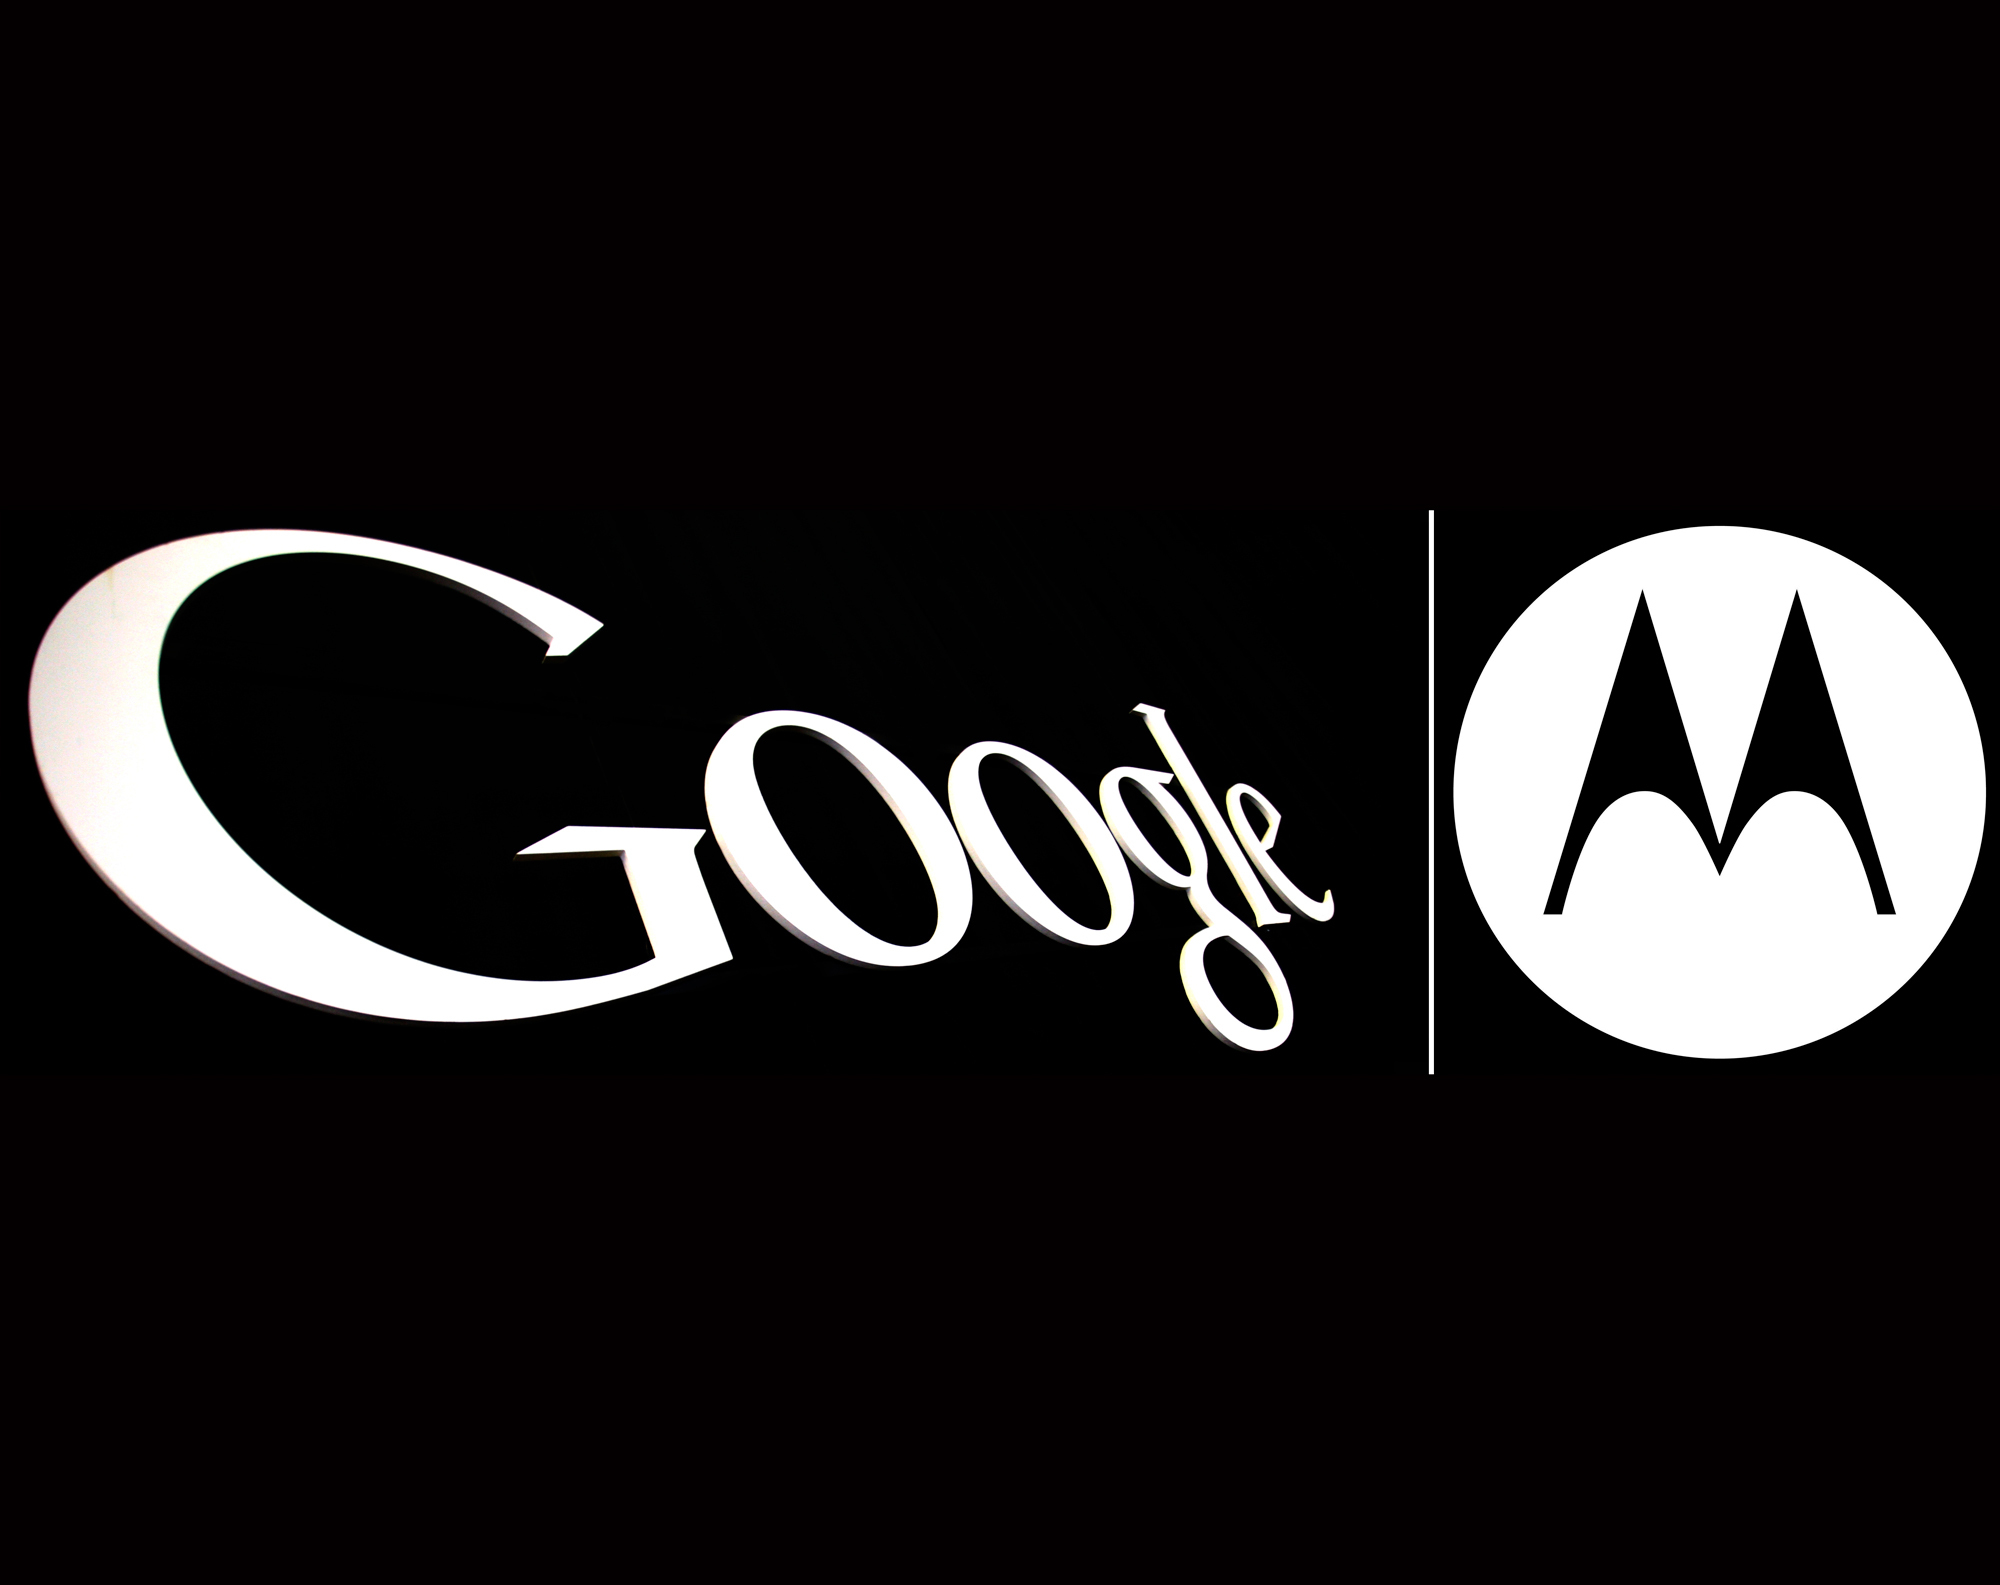 S&P penalizează Google din cauza achiziţiei Motorola